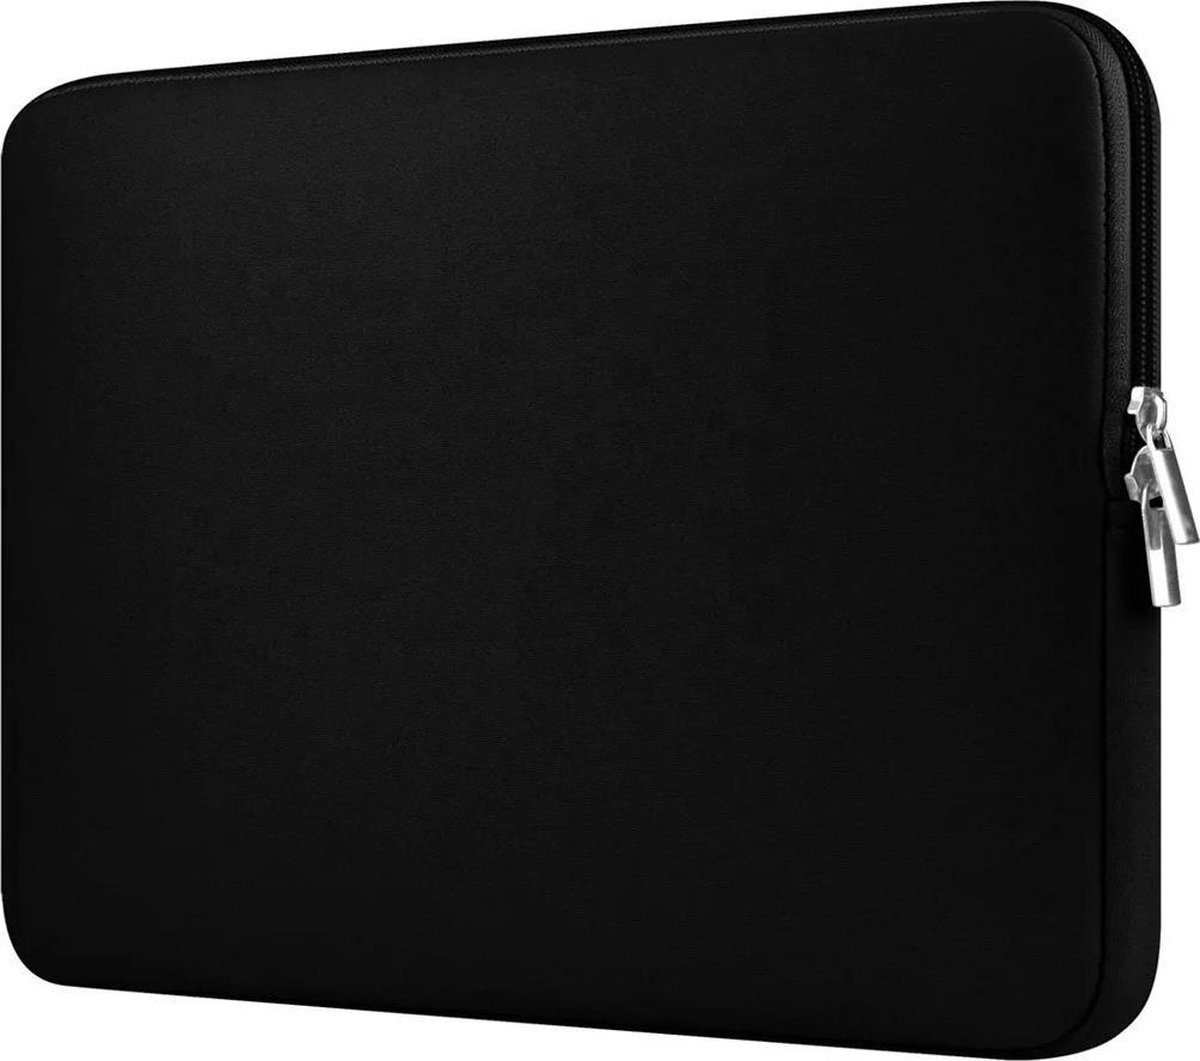 Laptoptas – case – 14,6 inch – stevige kwaliteit – soft touch – kleur zwart - unisex - spatwaterbestending